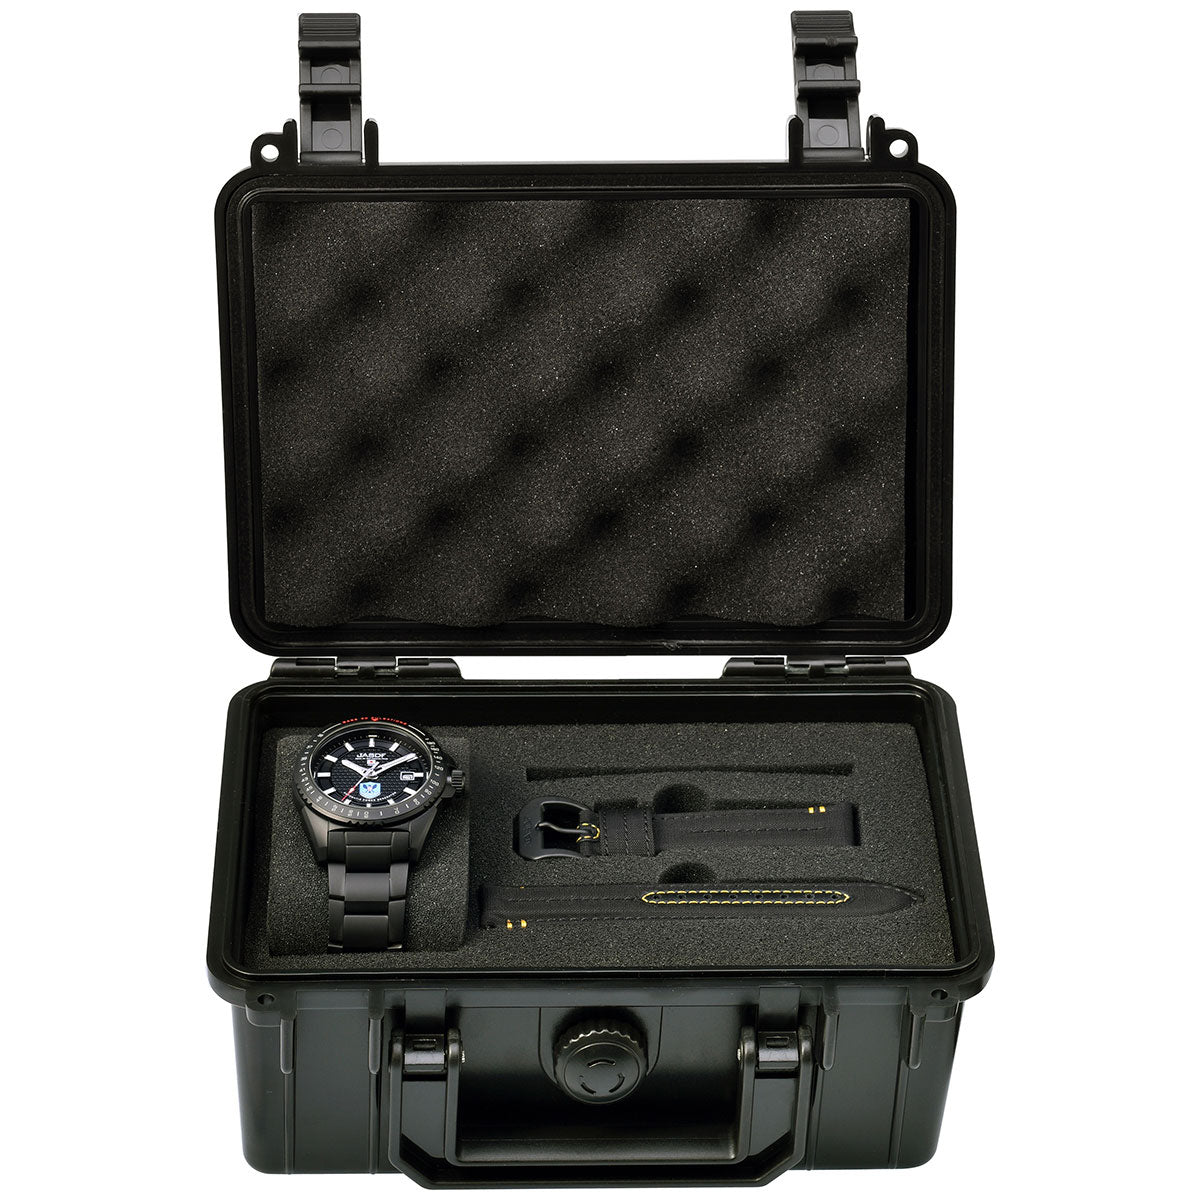 ケンテックス KENTEX JSDF 航空救難団専用モデル 限定モデル エアーレスキューウィング 日本製 S778X-2 腕時計 時計 メンズ